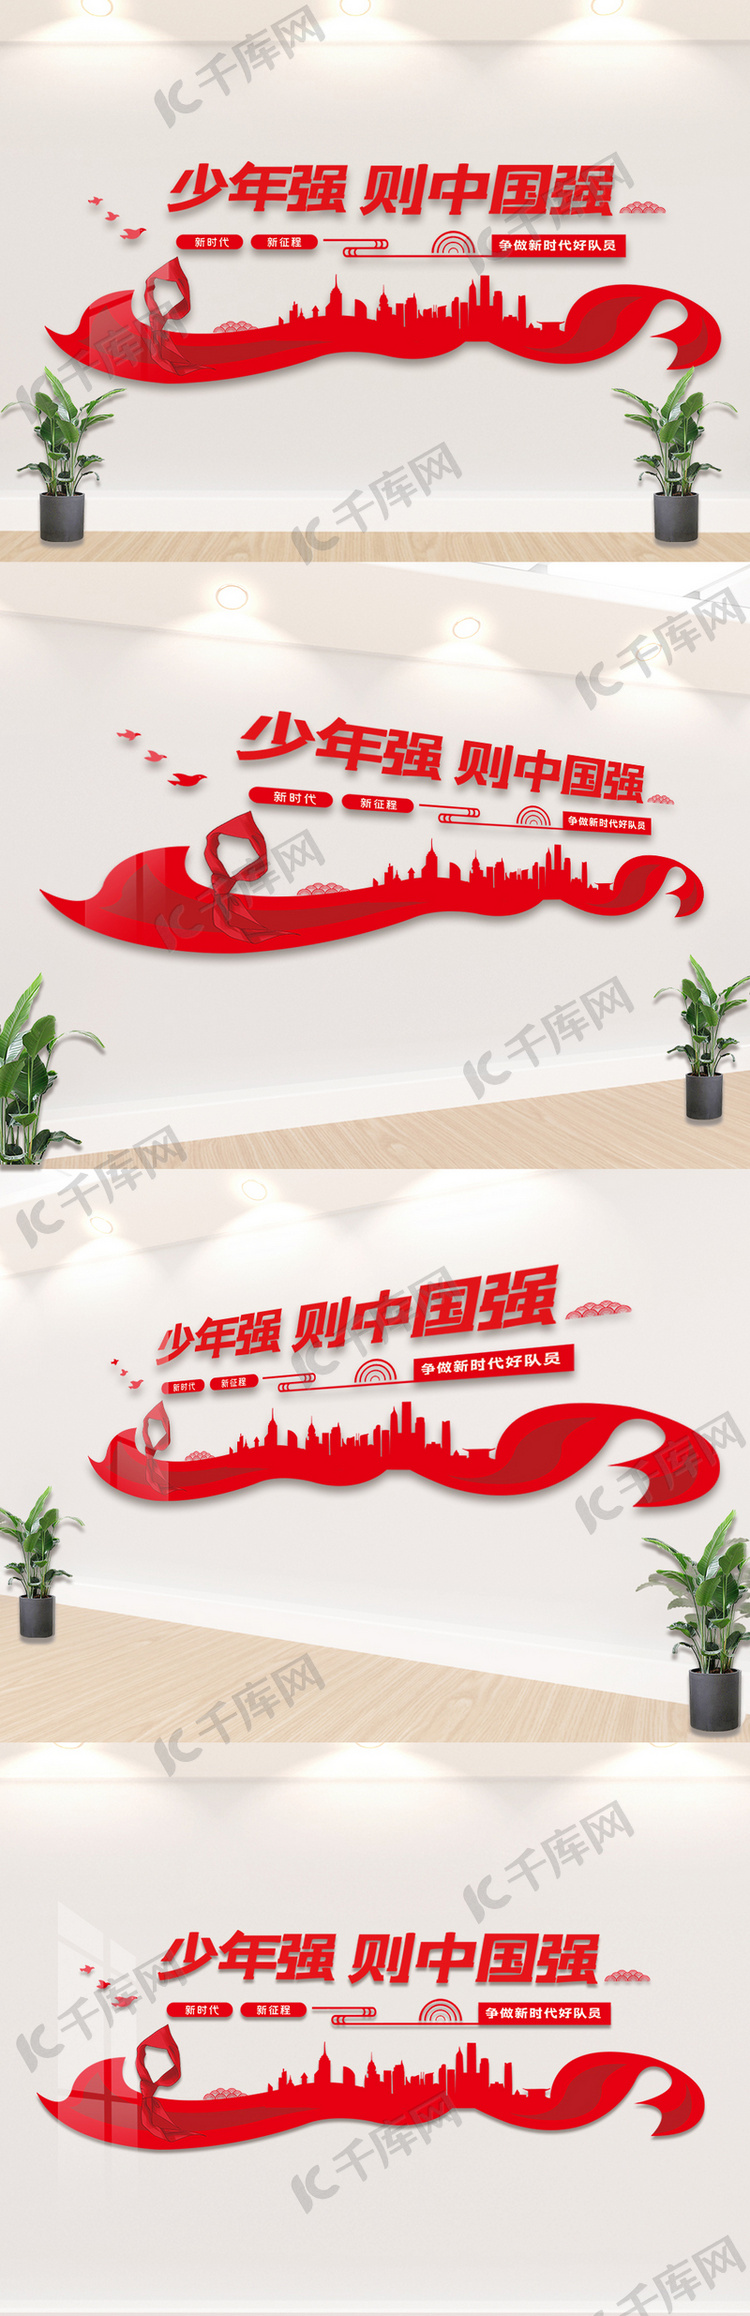 少年强中国强内容知识文化墙设计